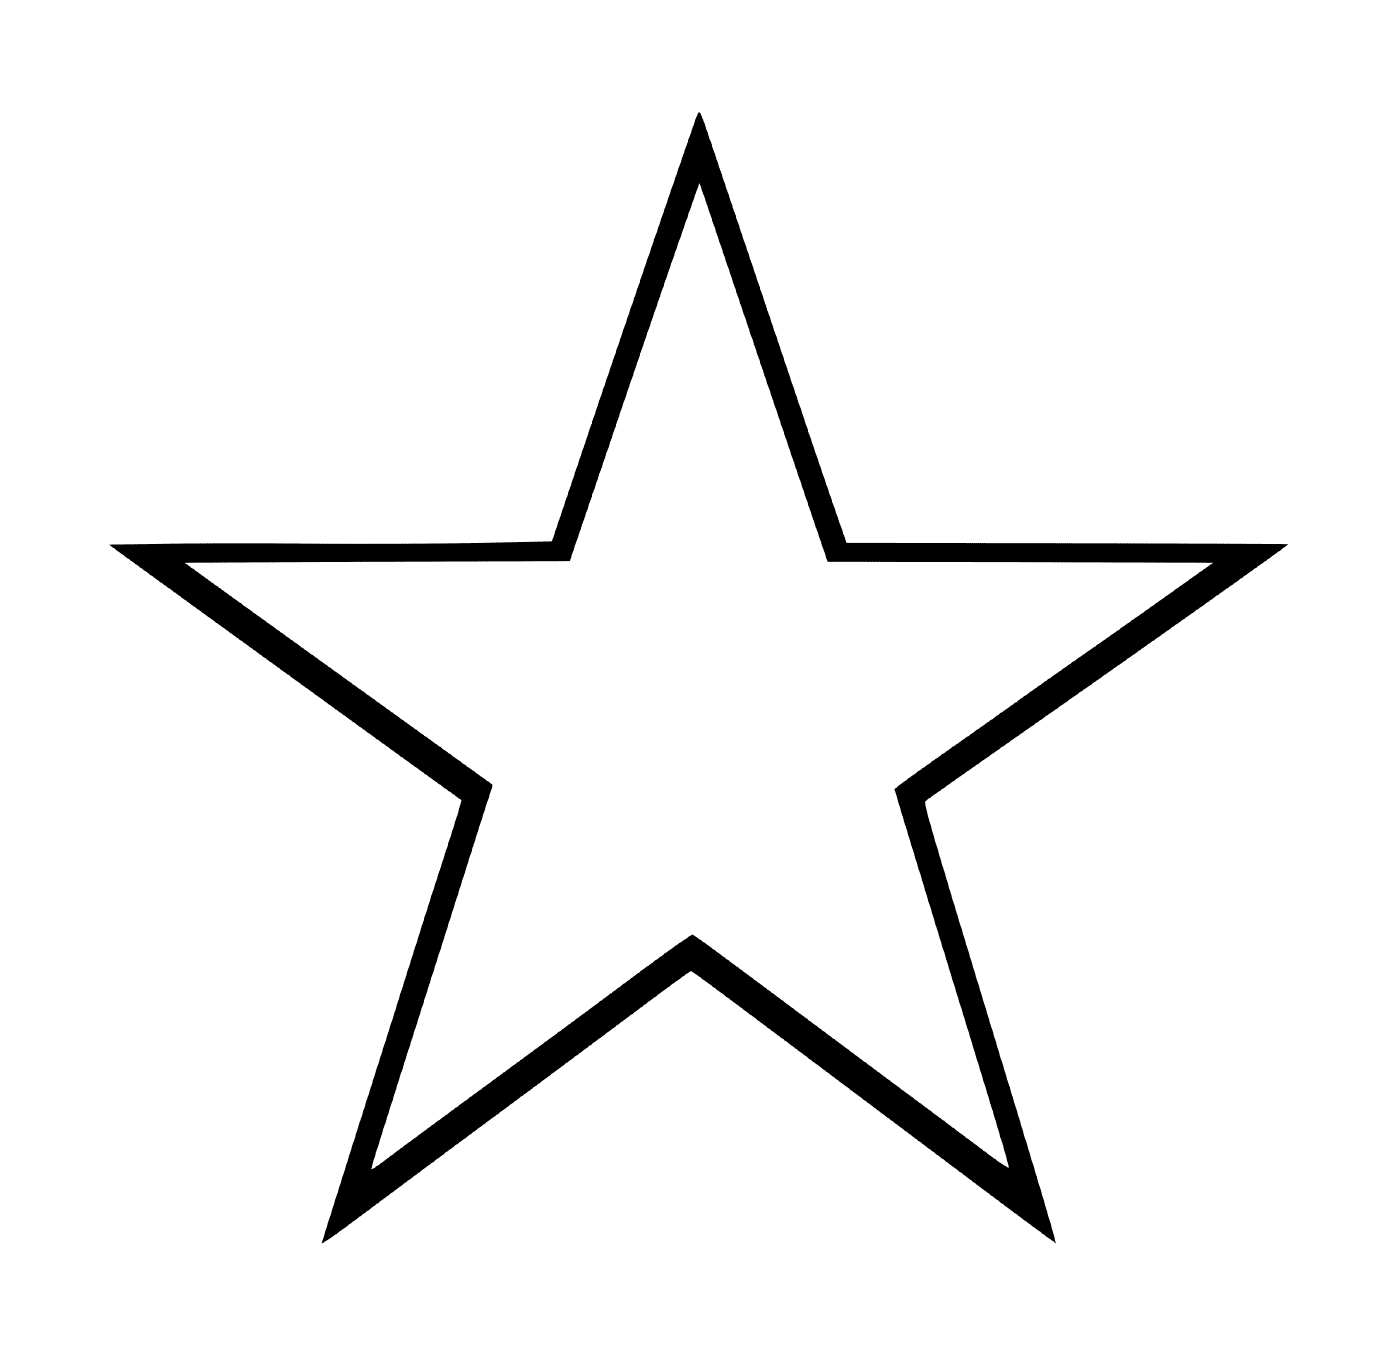  Una stella facile da disegnare 